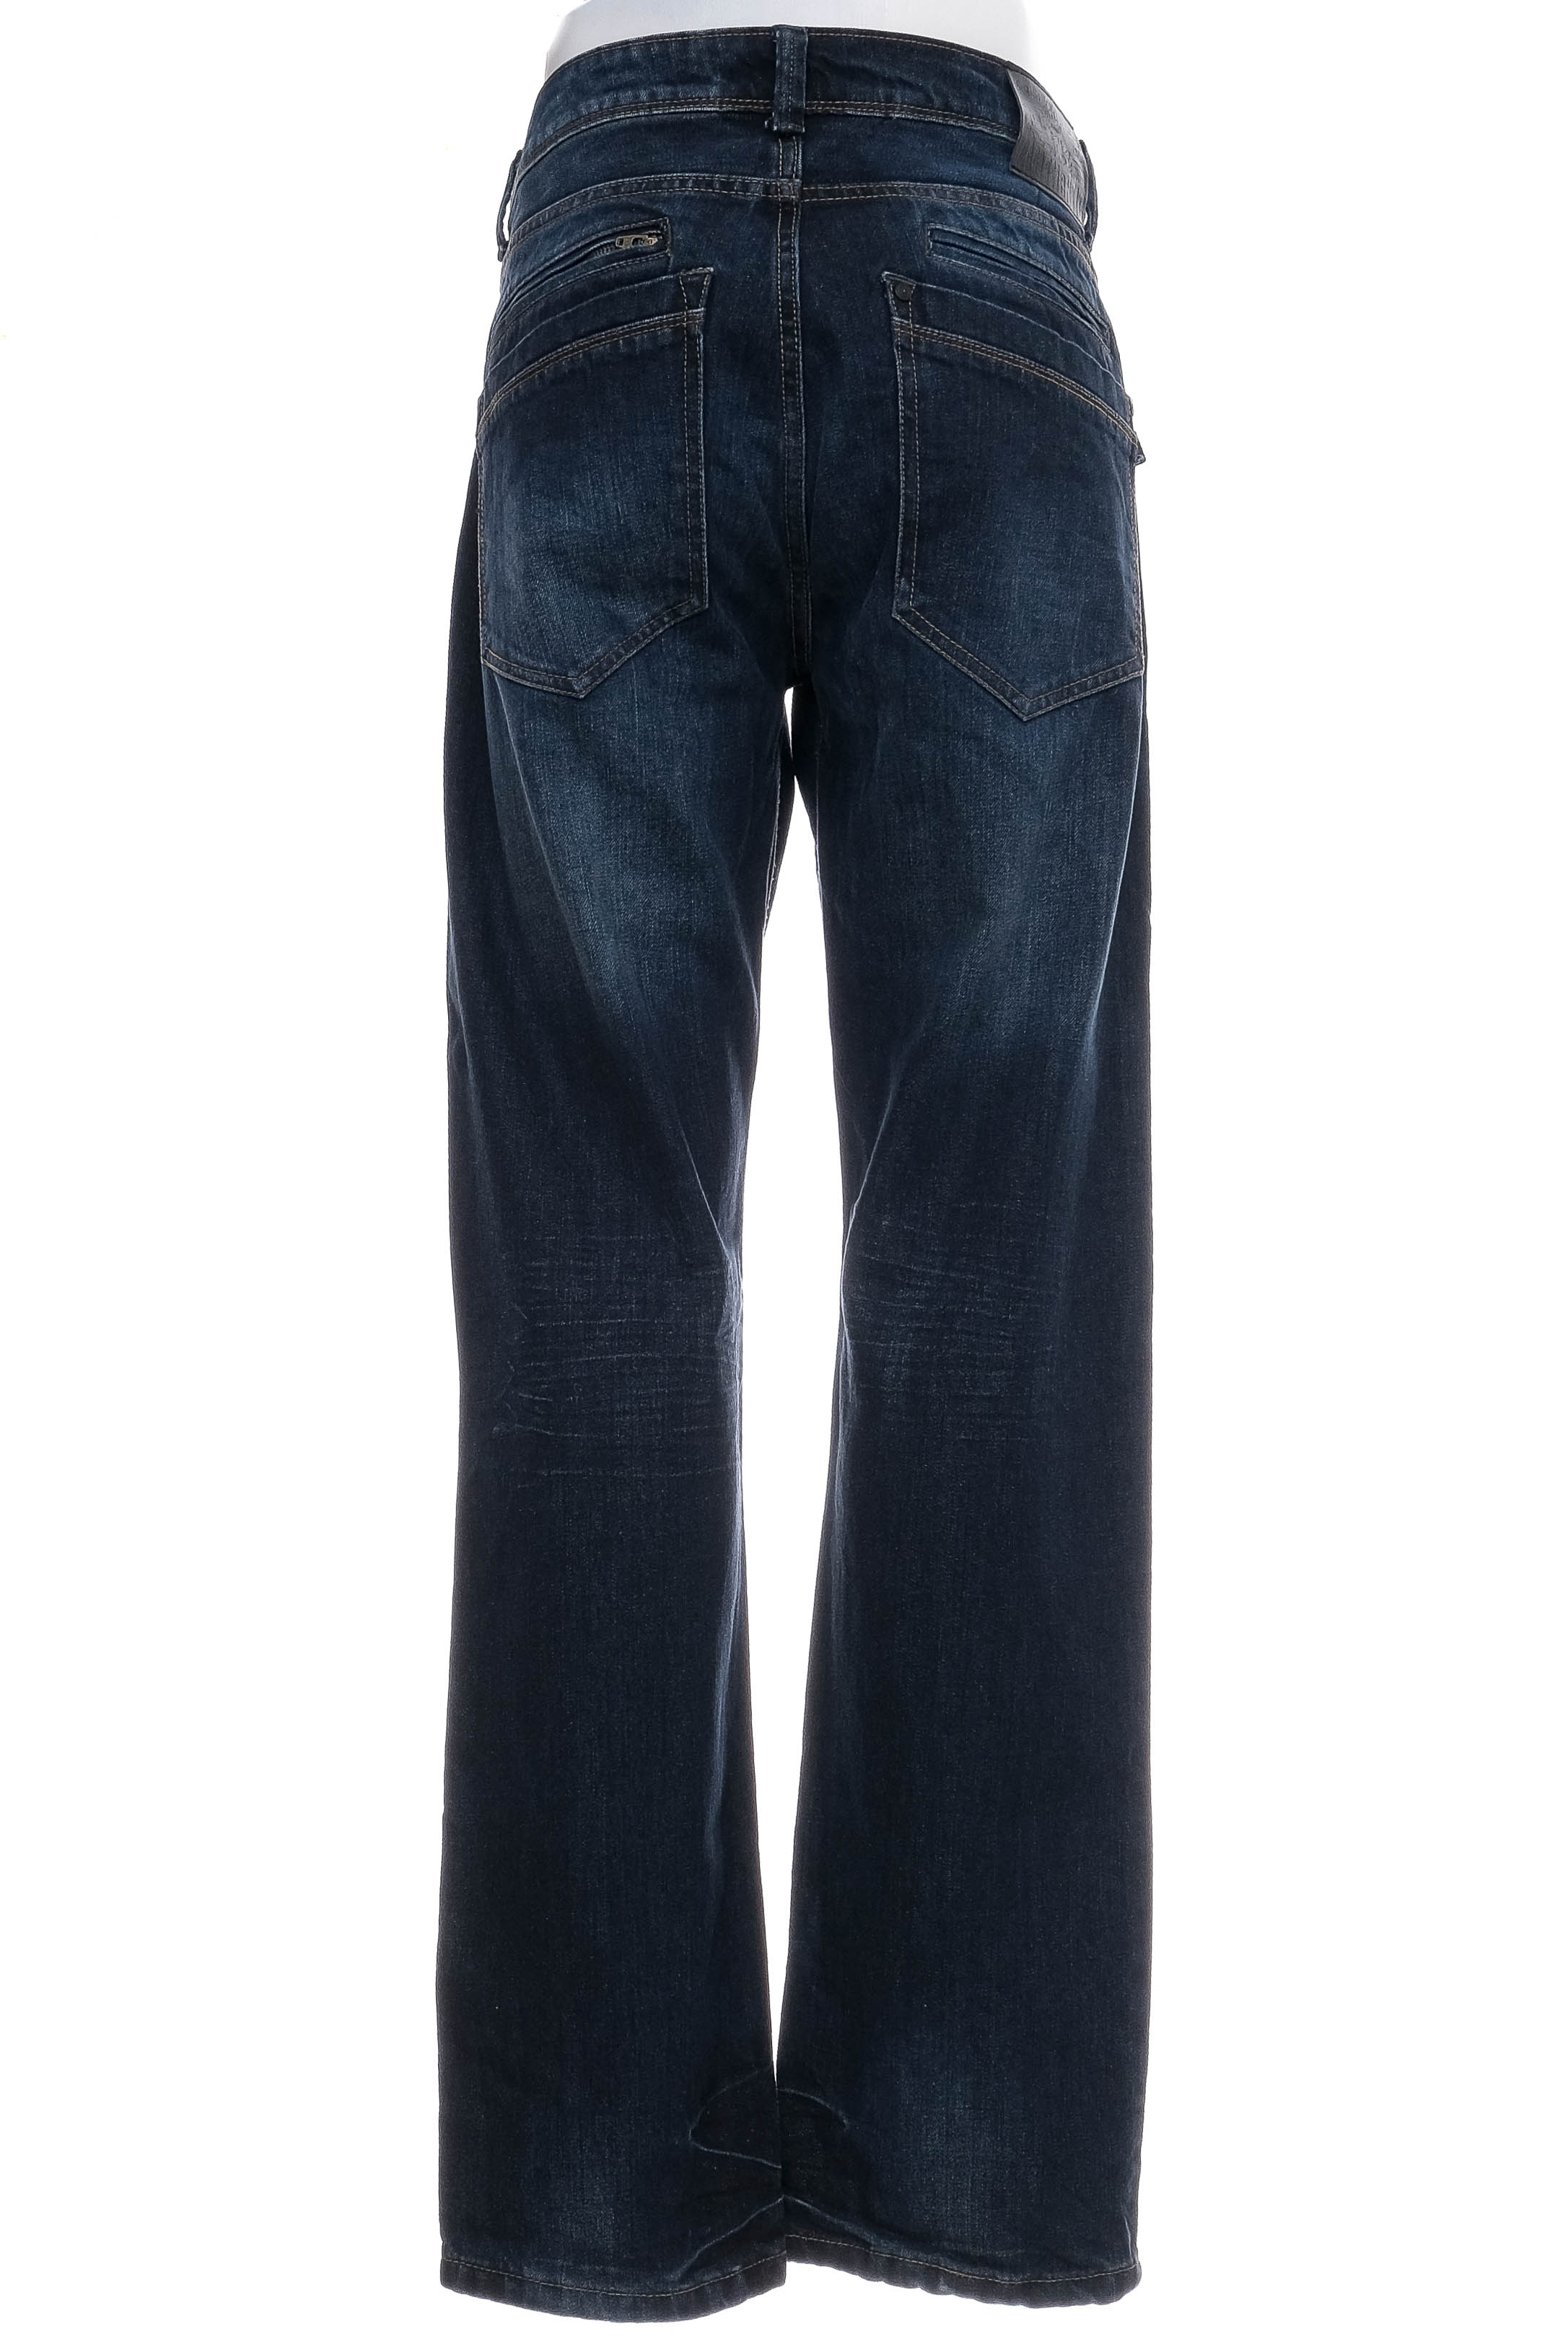 Men's jeans - Tom Tompson - 1